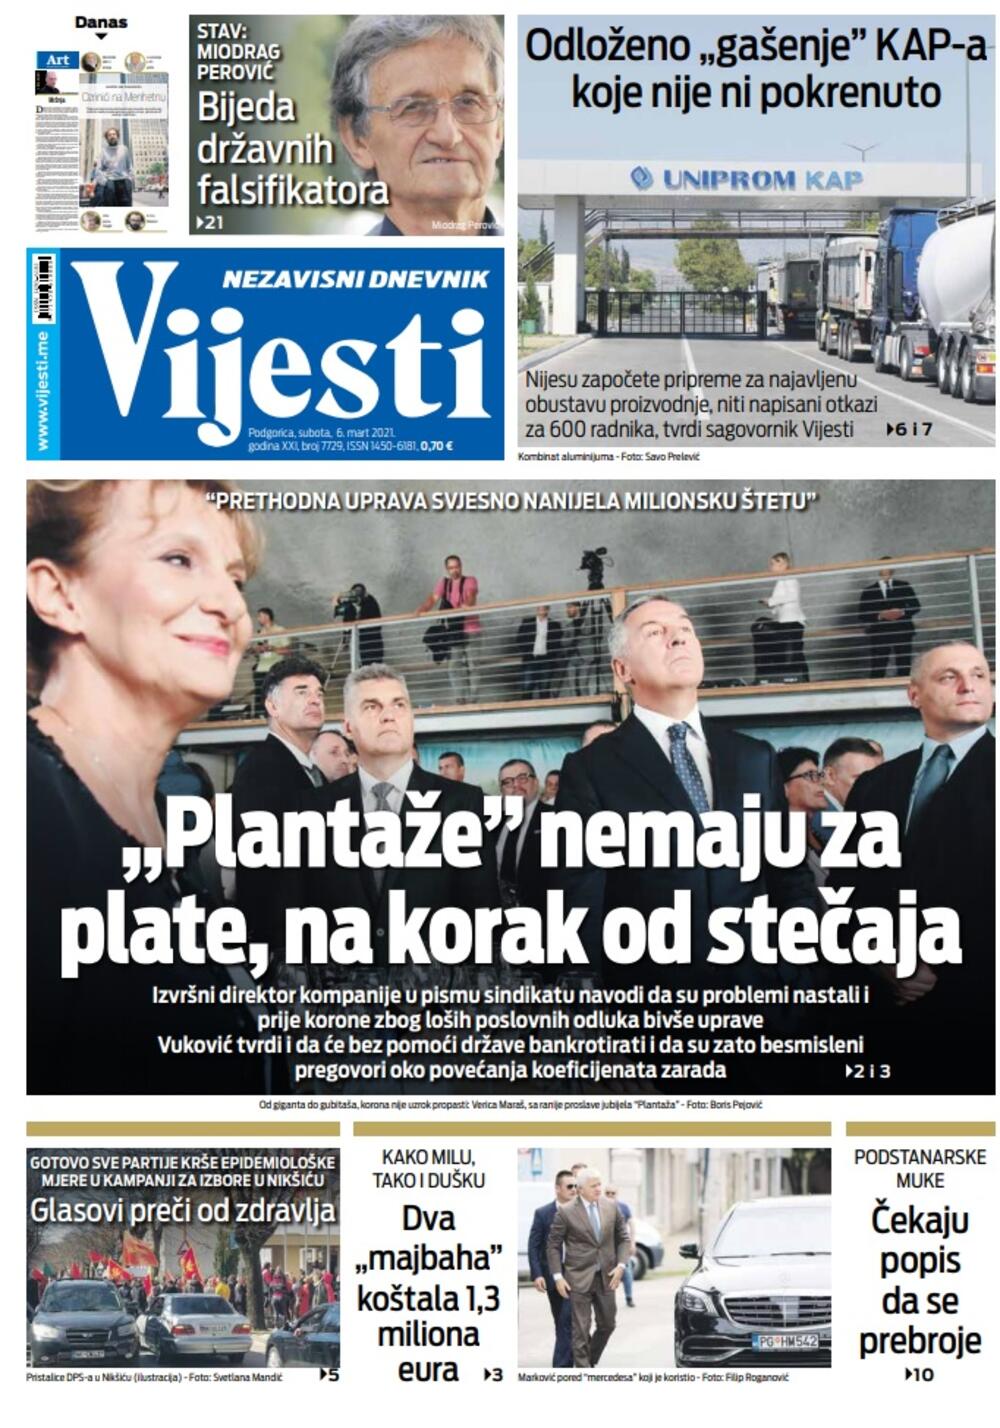 Naslovna strana "Vijesti" za subotu 6. mart 2021. godine, Foto: Vijesti